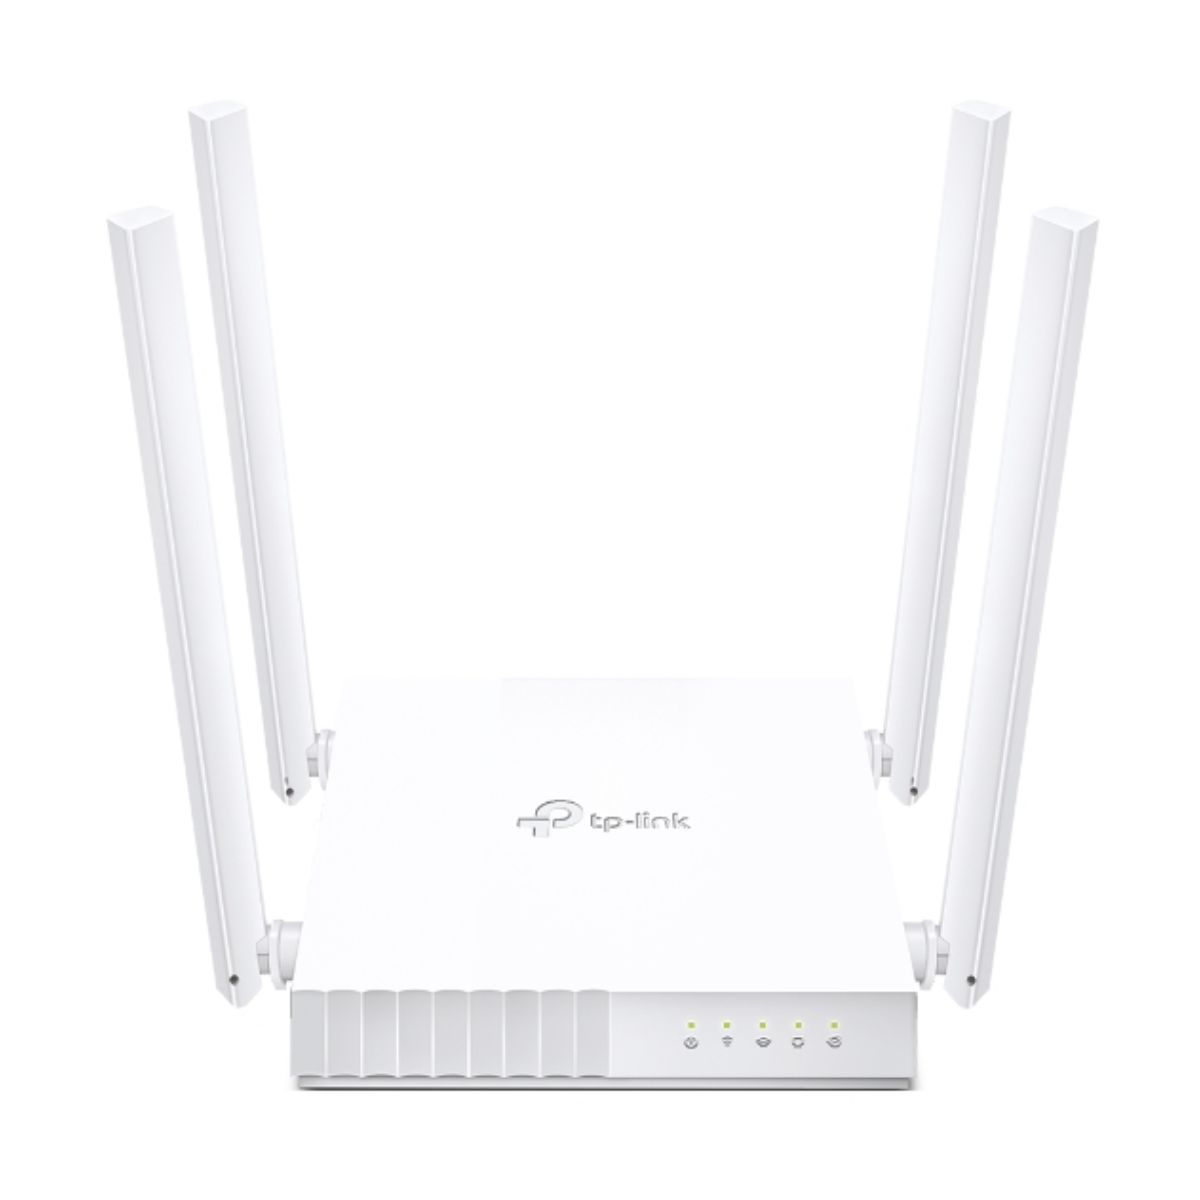 Bộ định tuyến wifi TP-Link Archer C24 tốc độ lên đến 300 Mbps 2.4 GHz và 433 Mbps at 5 GHz